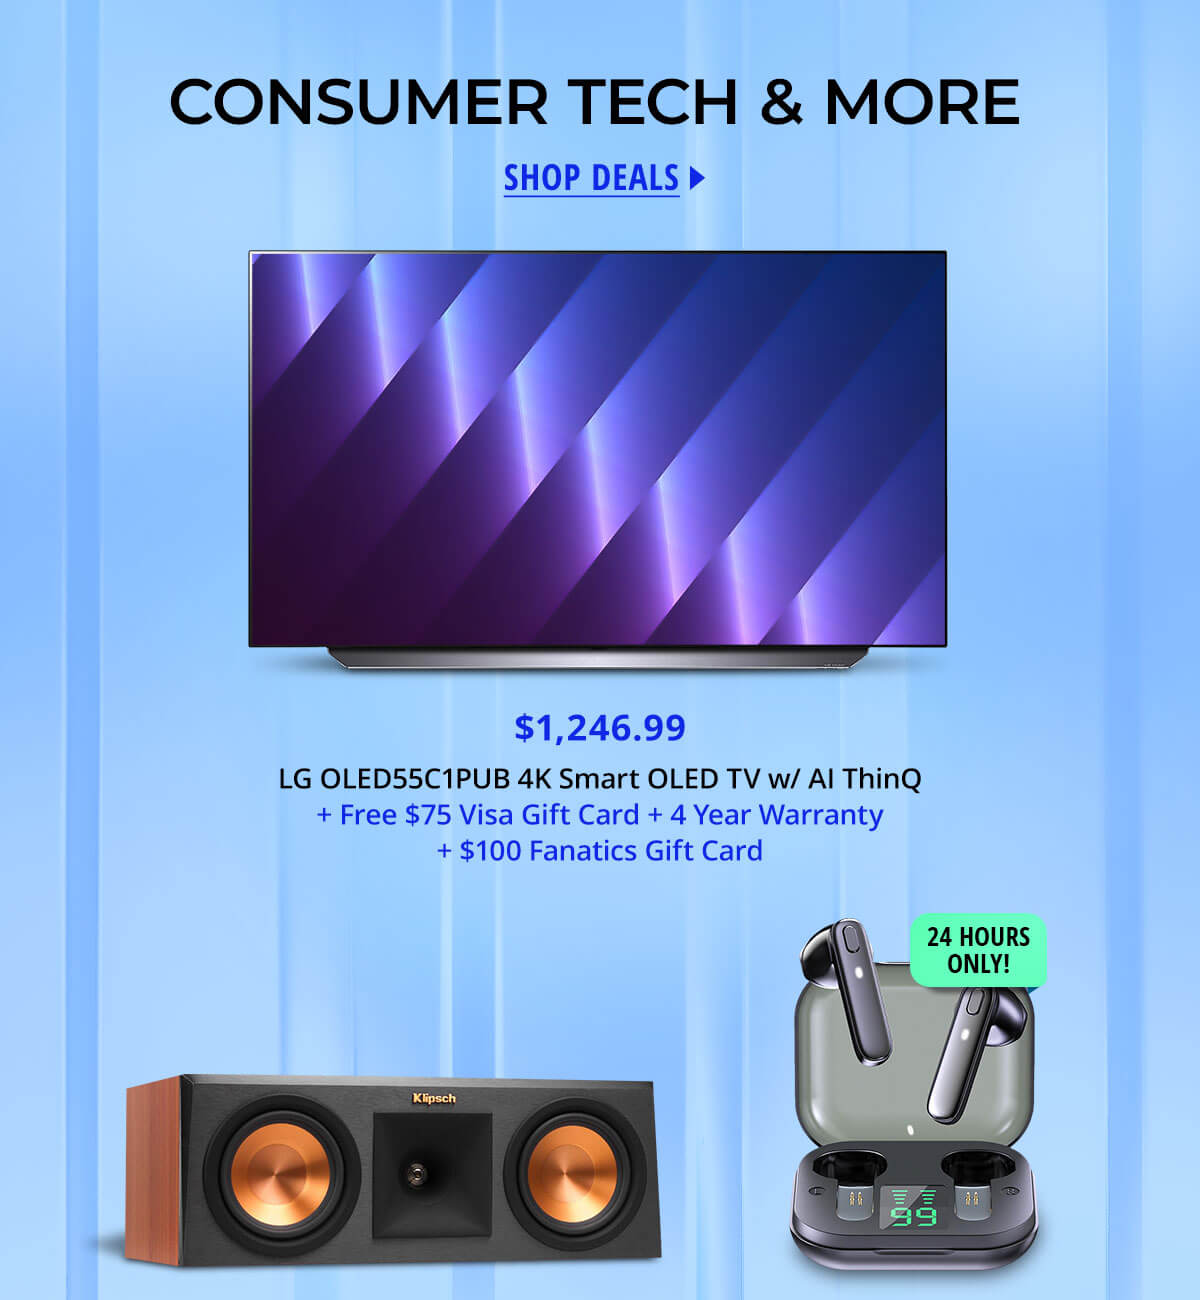 Consumer Tech & More